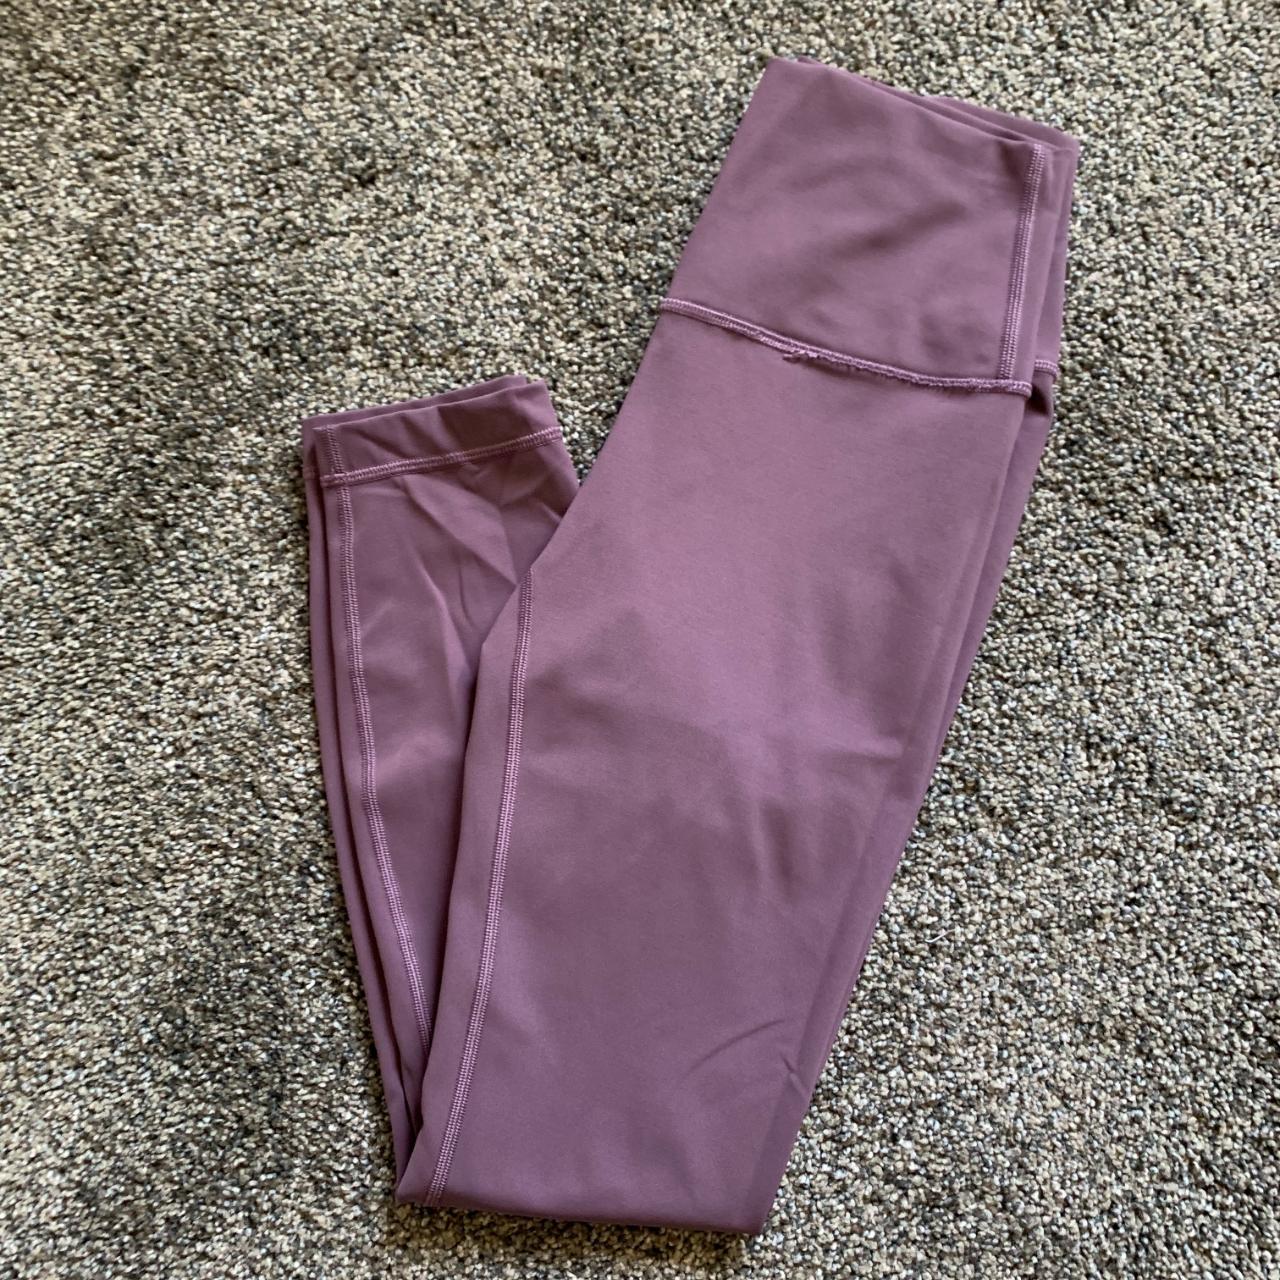 Light purple Lululemon leggings , Worn multiple times